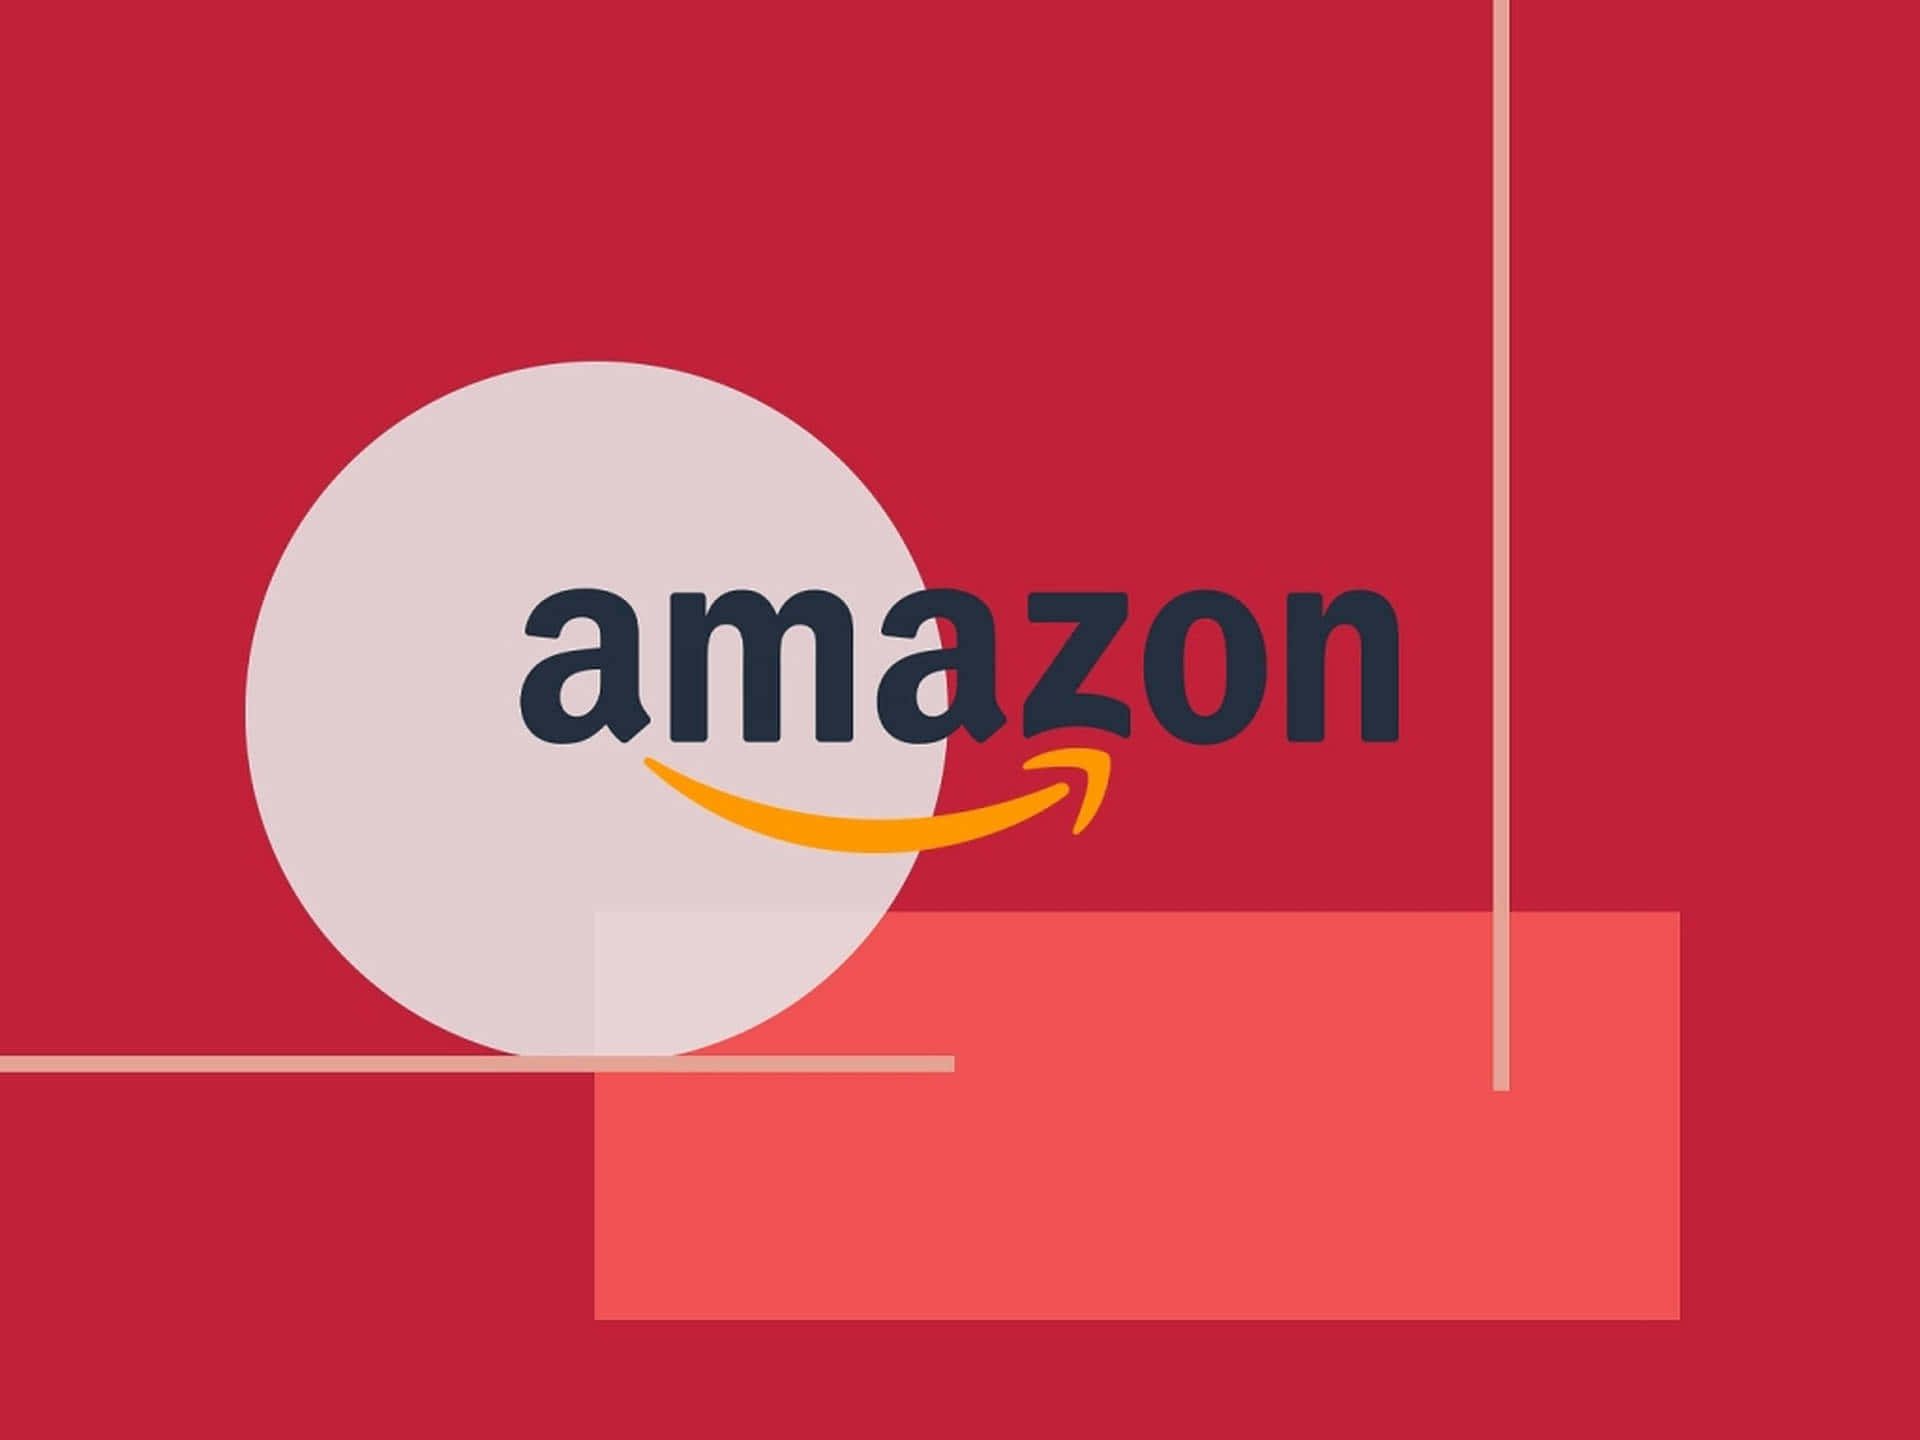 Logotipode Amazon Uk Sobre Fondo Rojo. Fondo de pantalla